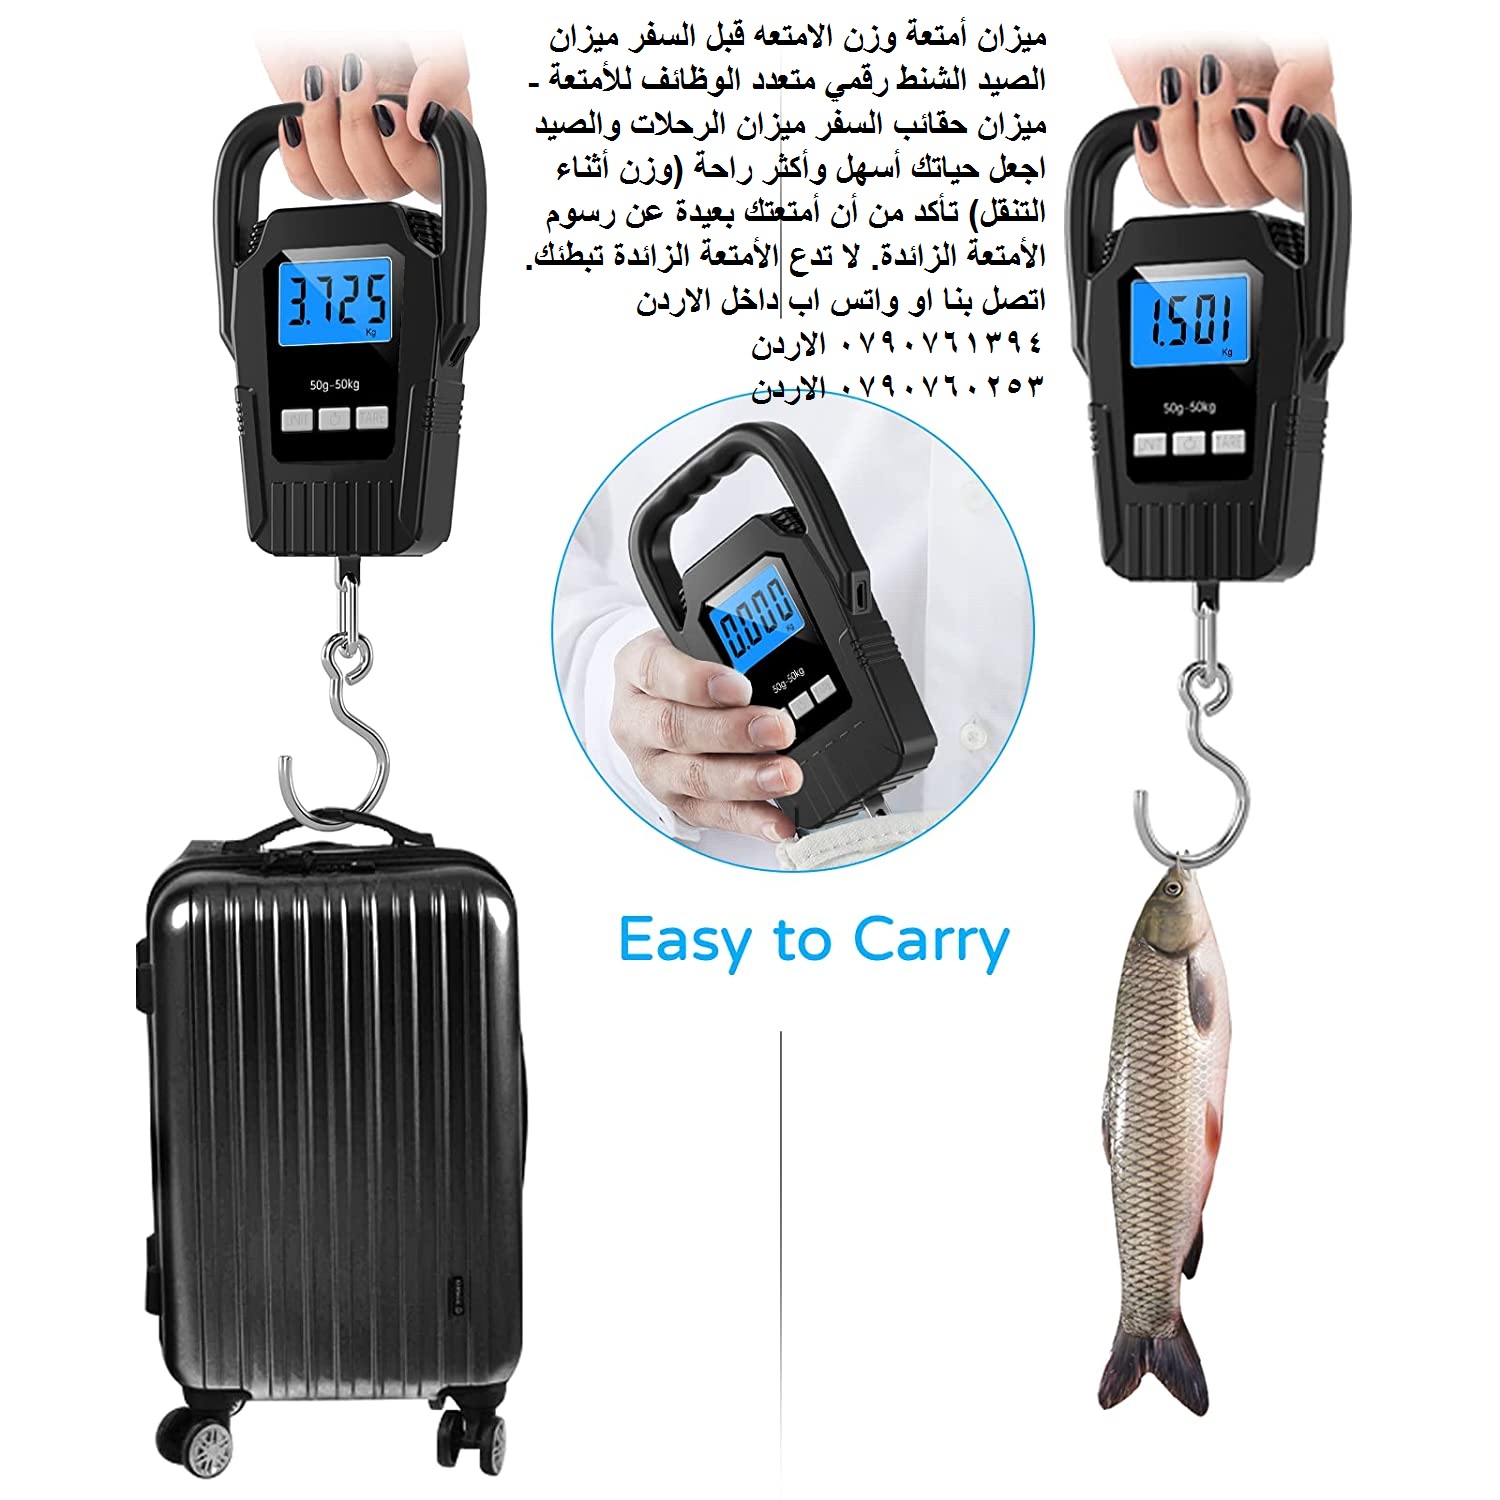 ميزان الحقائب ميزان شنط السفر 50 كيلو - كيفية وزن حقائبك قبل السفر بالطائرة - ميزان أمتعة وزن الامتع